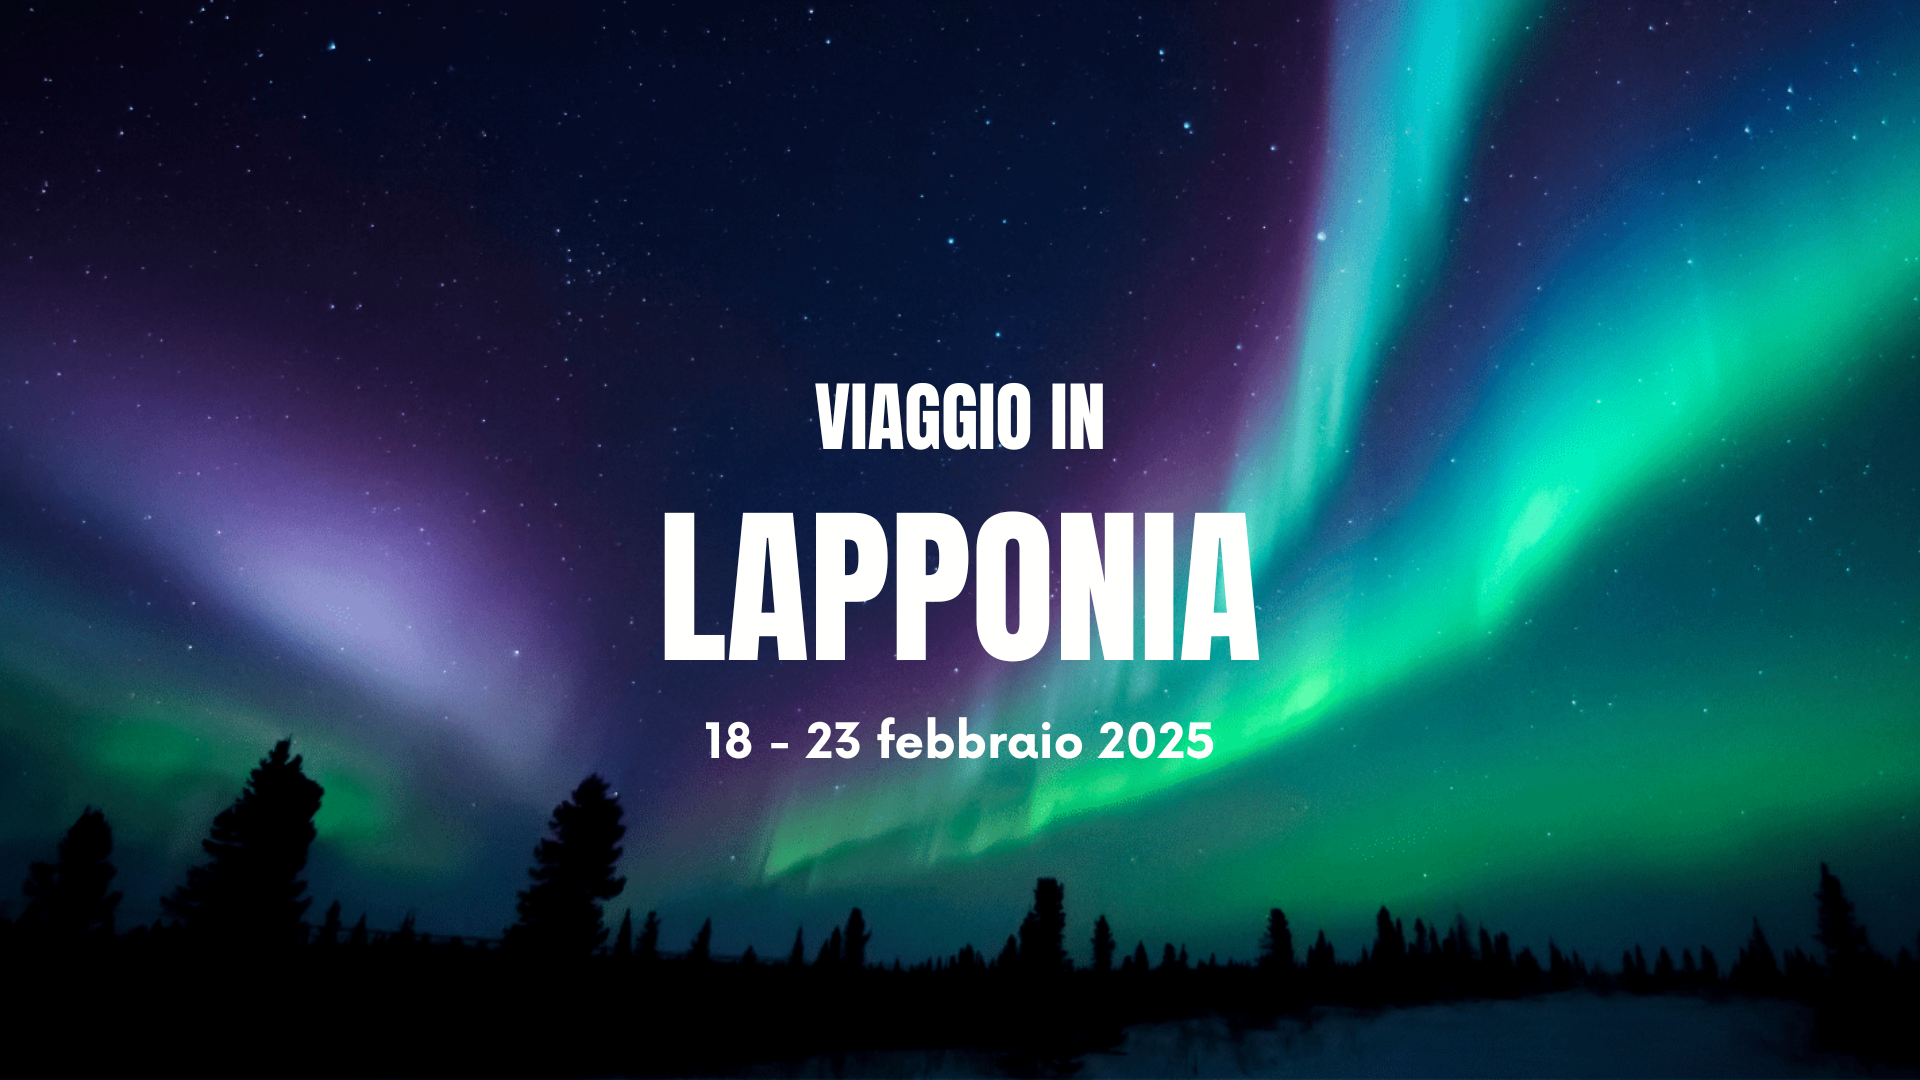 Viaggio in Lapponia 2025